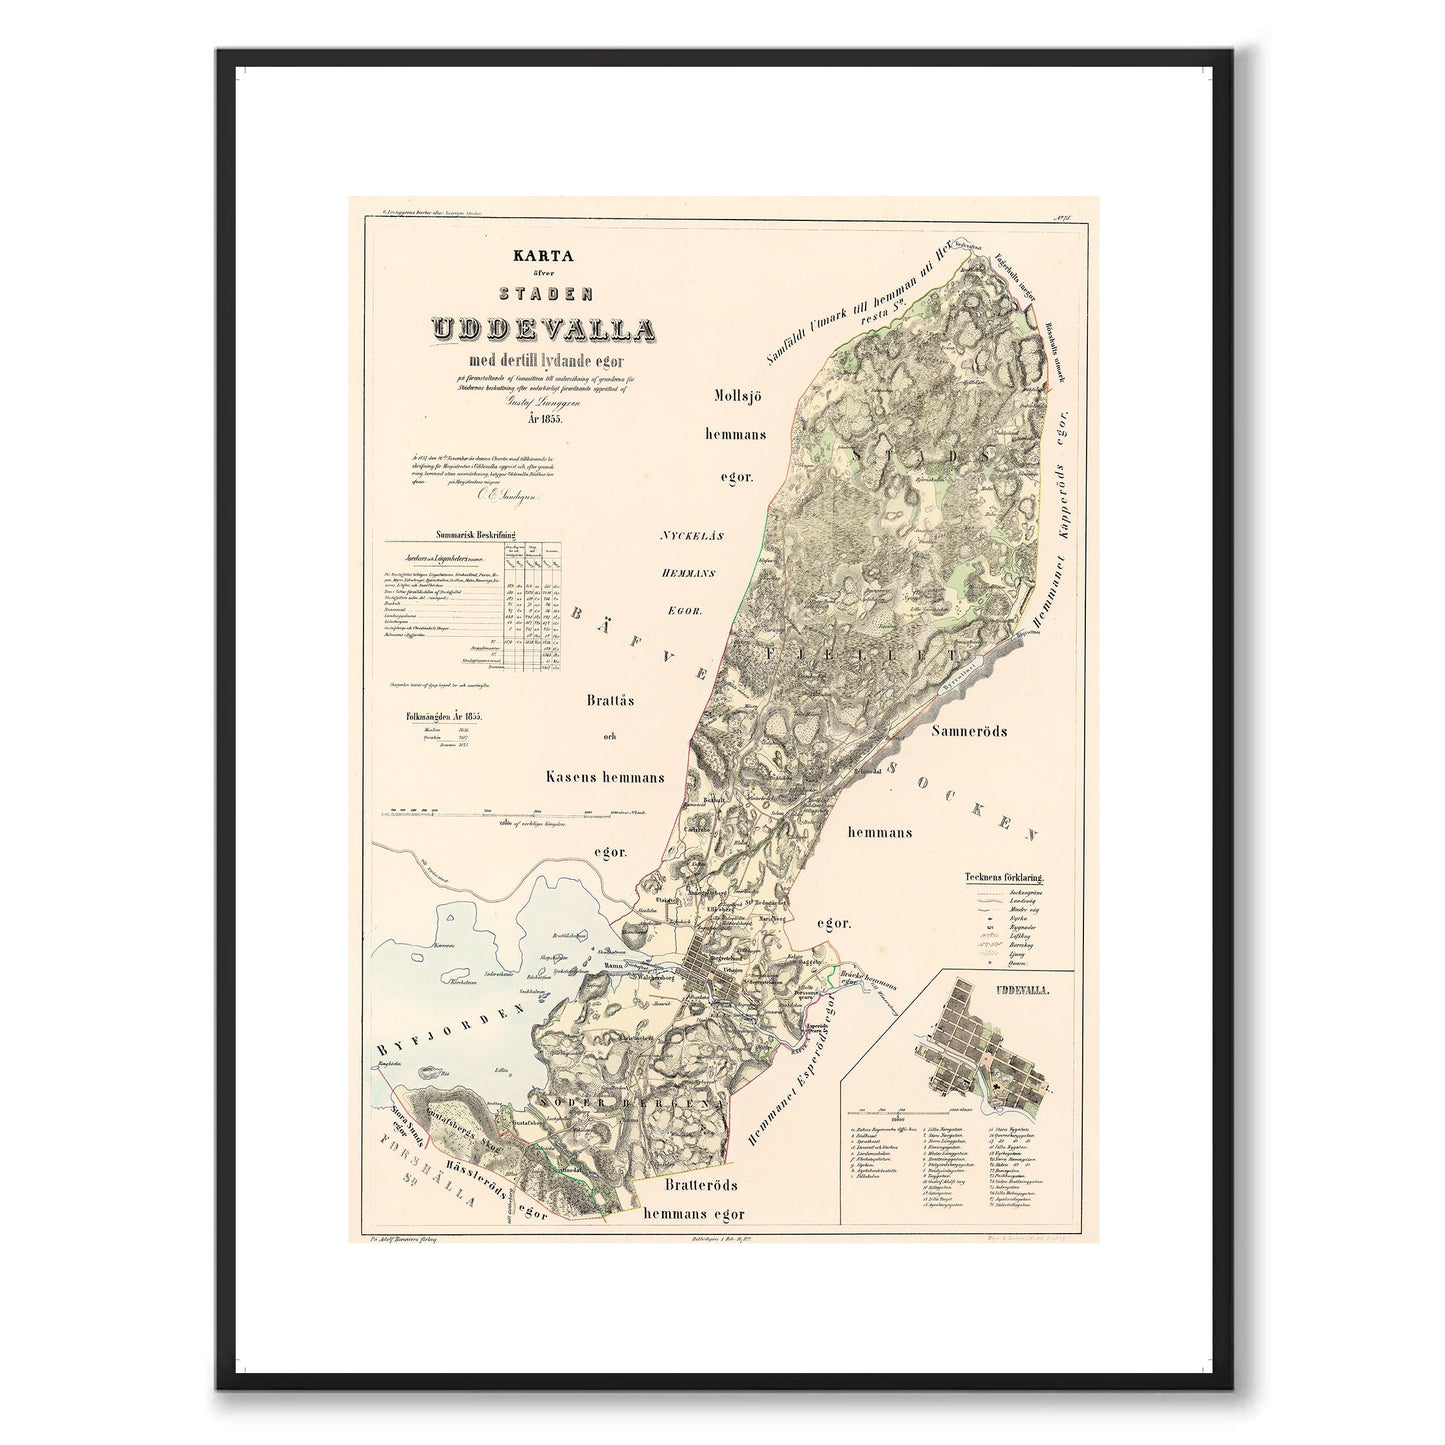 Poster med reproduktion av historisk karta över Uddevalla från Ljunggrens klassiska atlas. 